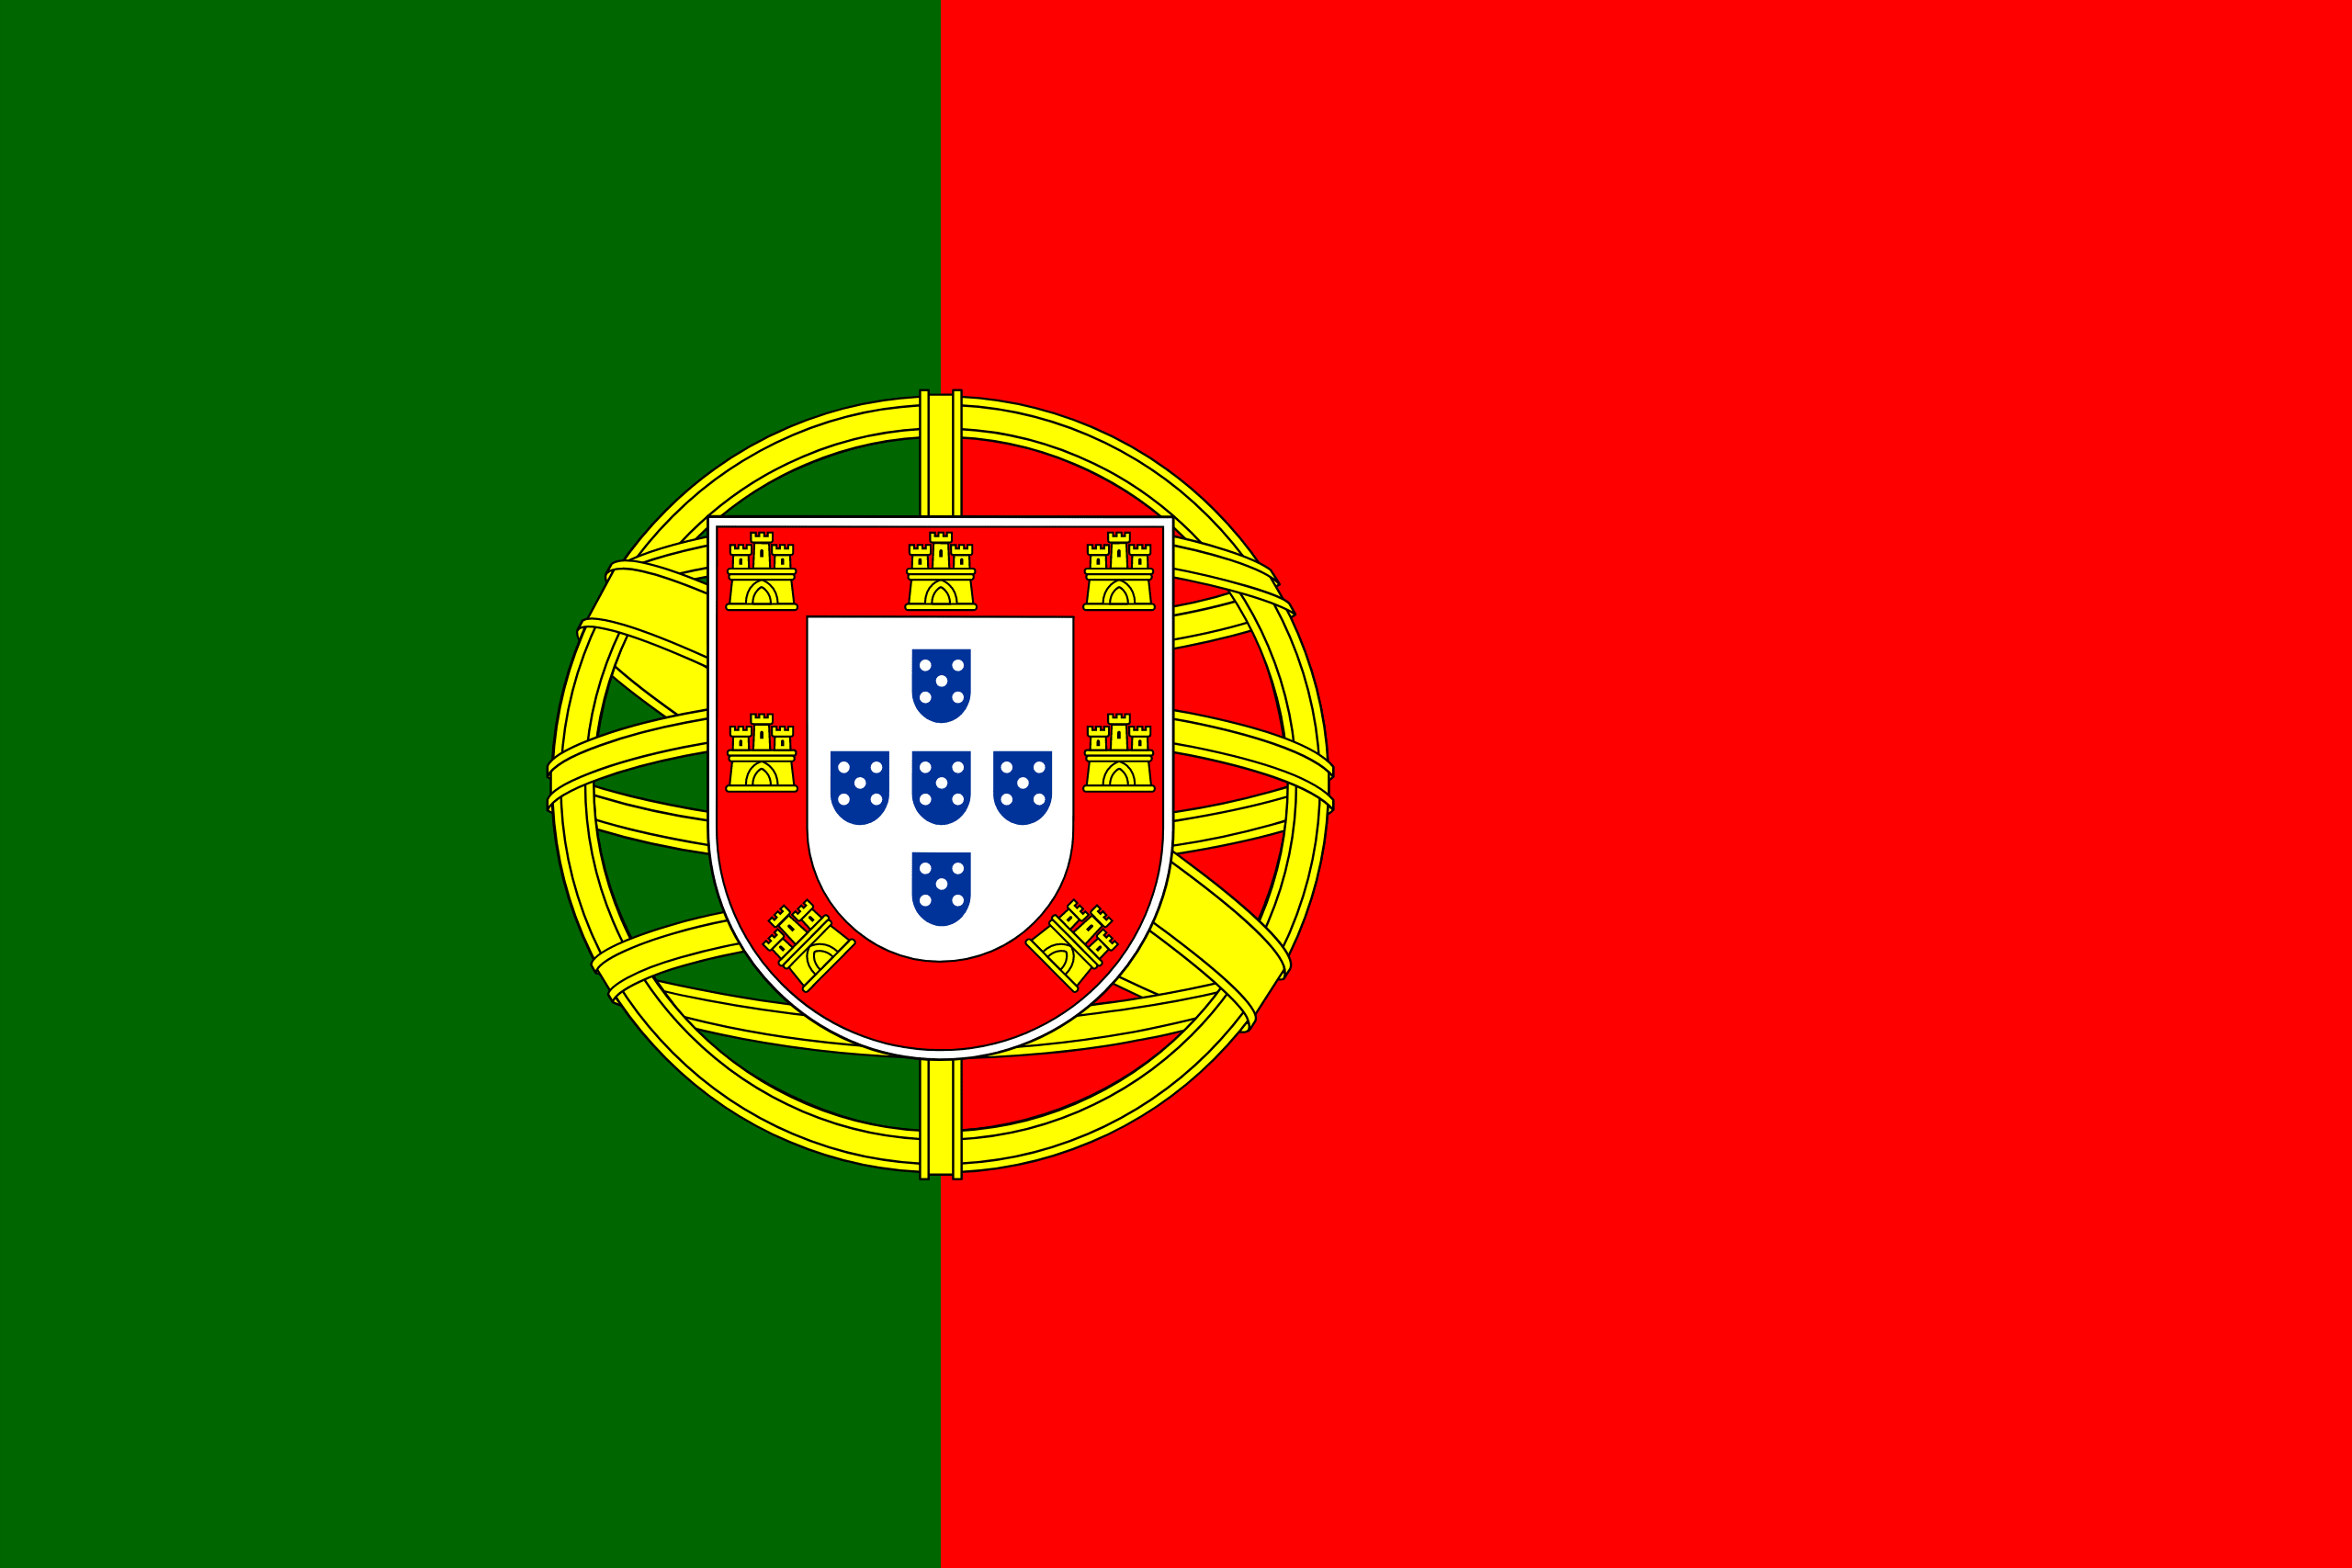 ポルトガル共和国 flag